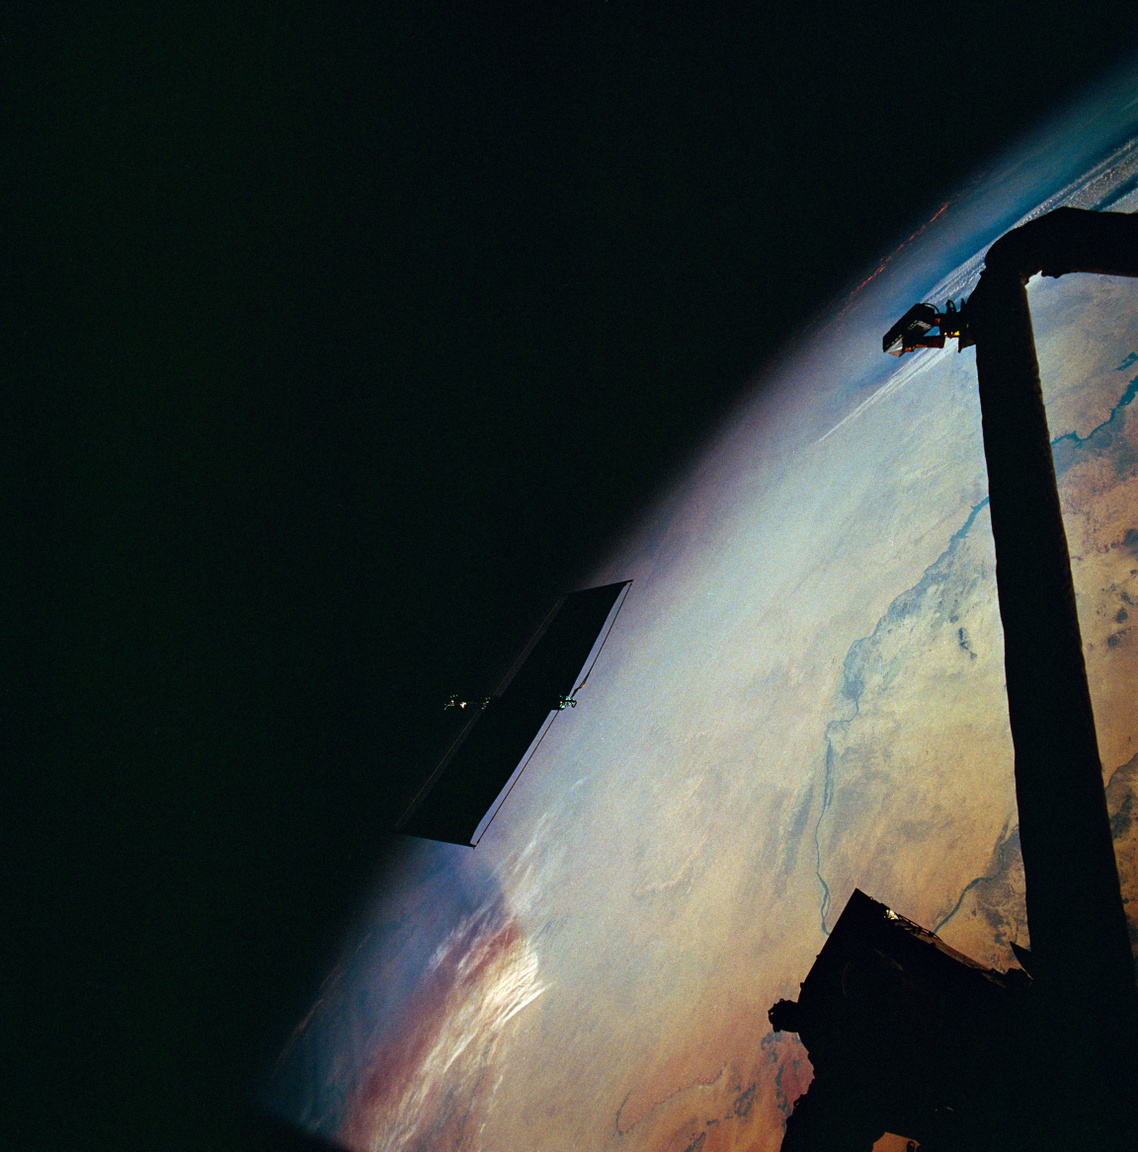 1993. december 6. Az első nagyjavítás során eltávolították az egyik sérült napelemtáblát is. A fényképen látható, ahogy a feleslegessé vált alkatrész eltávolodik az űrsikló mozgatható karjától, miközben lent a Földön épp Szudán északi része látható.